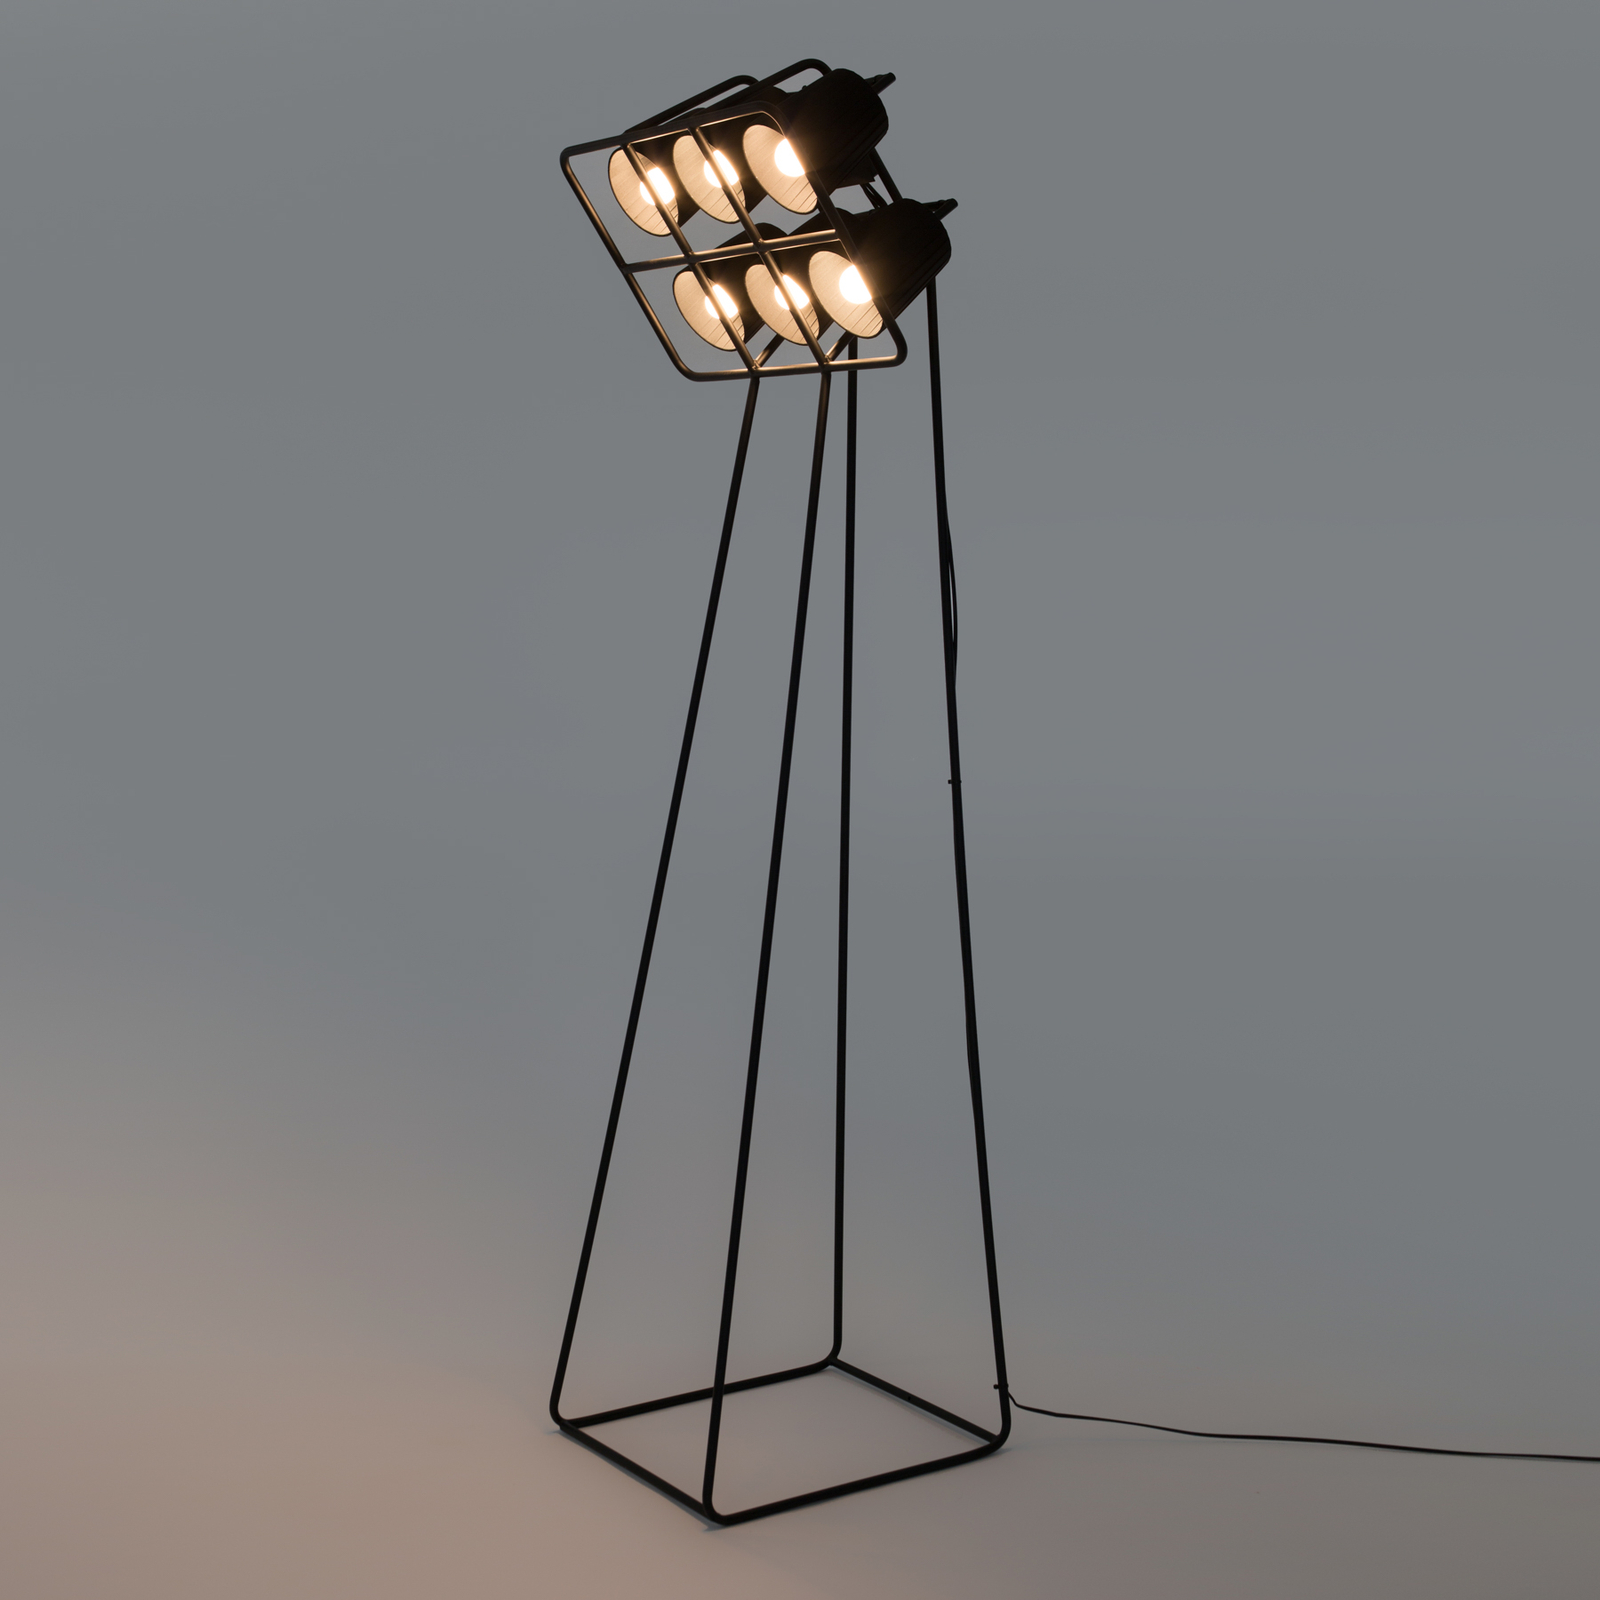 Lampe sur pied Multilamp, à six lampes, noire